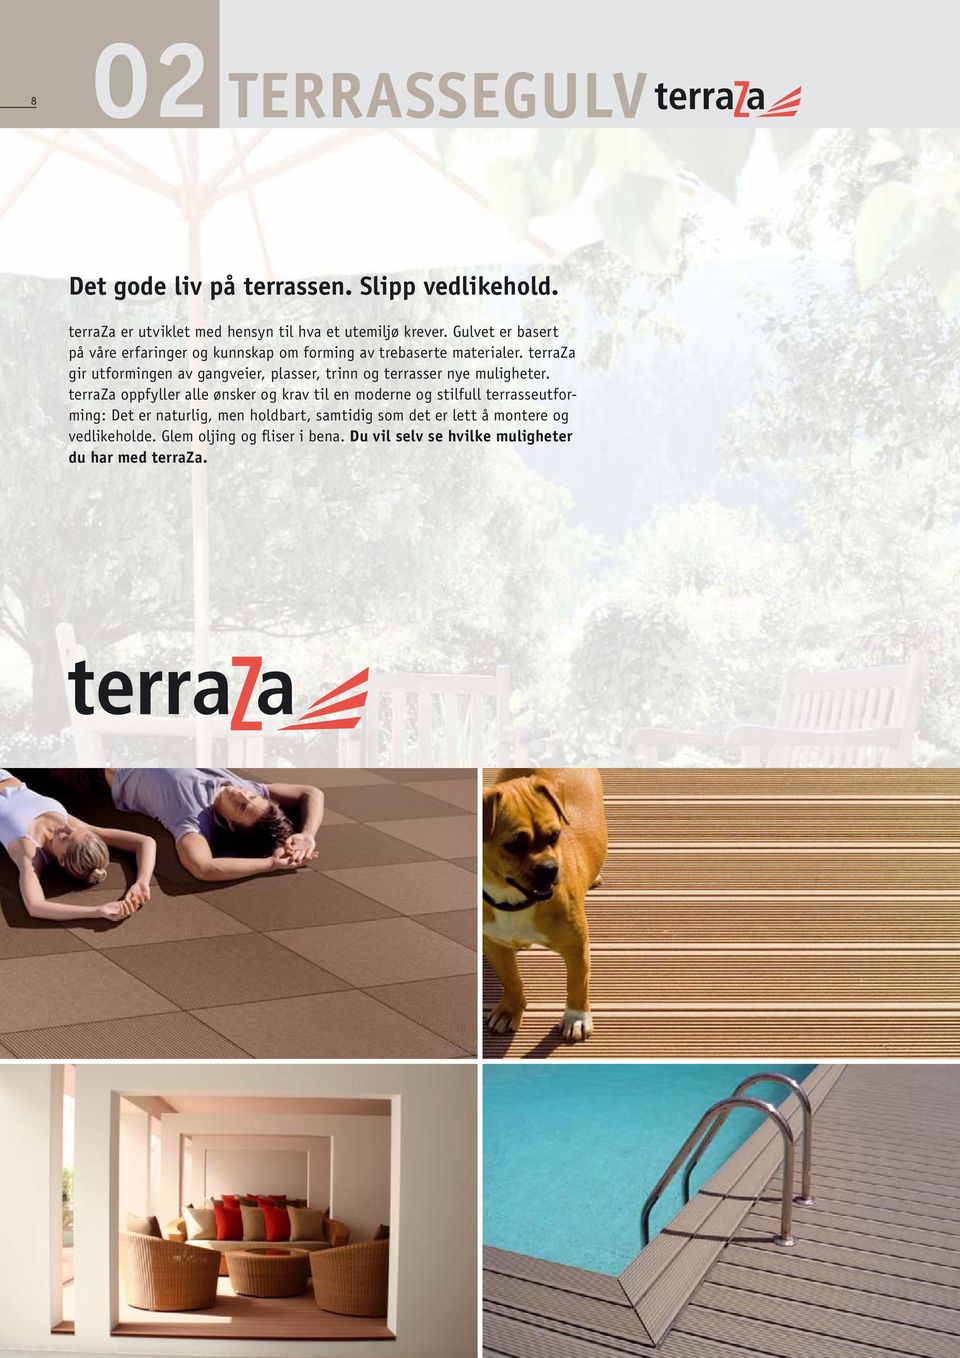 terraza gir utformingen av gangveier, plasser, trinn og terrasser nye muligheter.